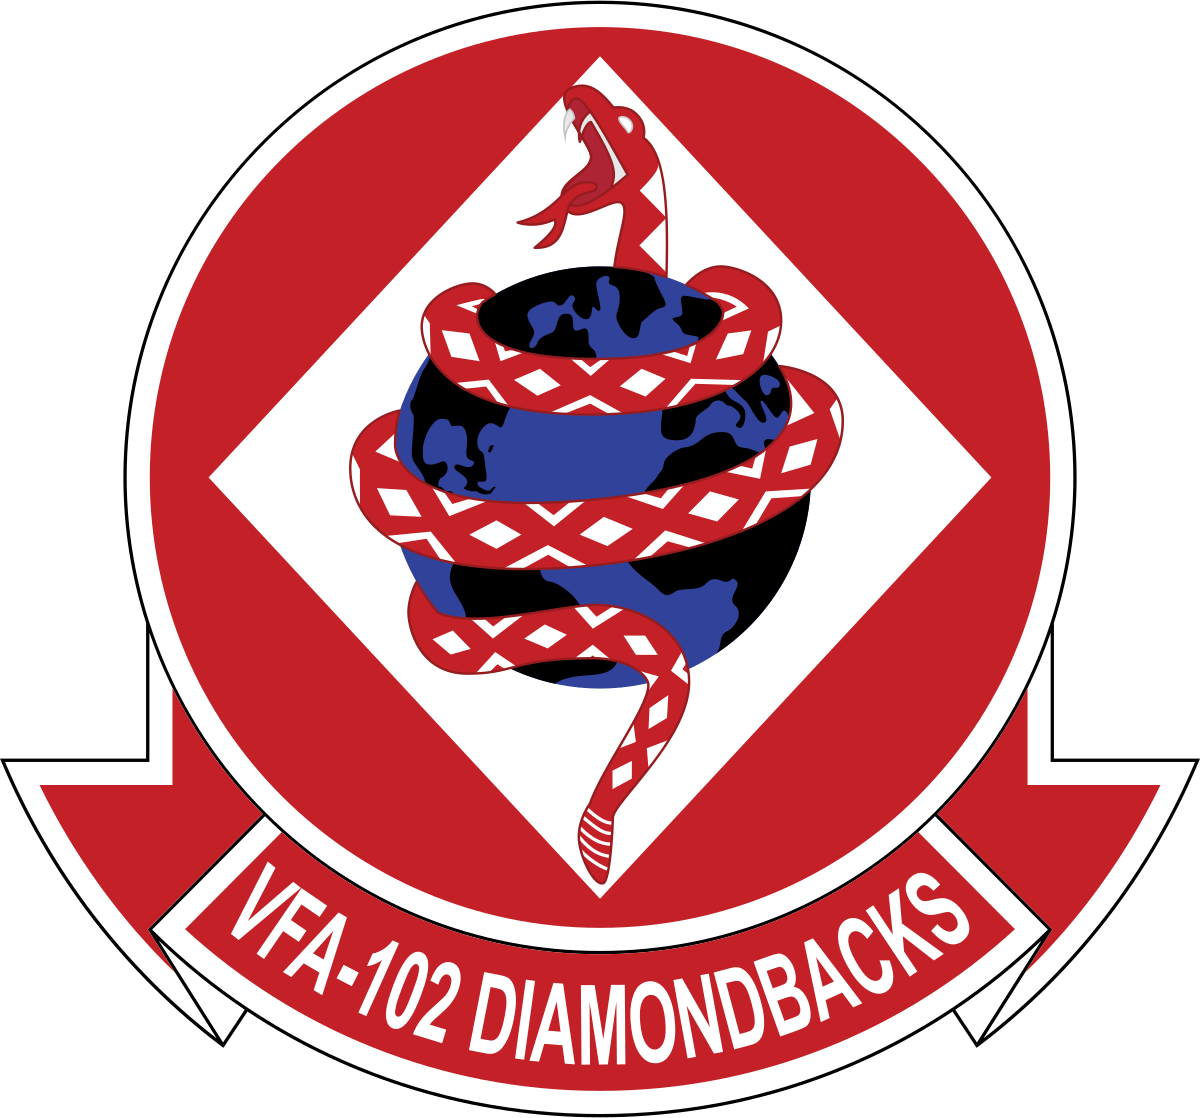 VFA-102 DIAMONDBACKS (60TH)